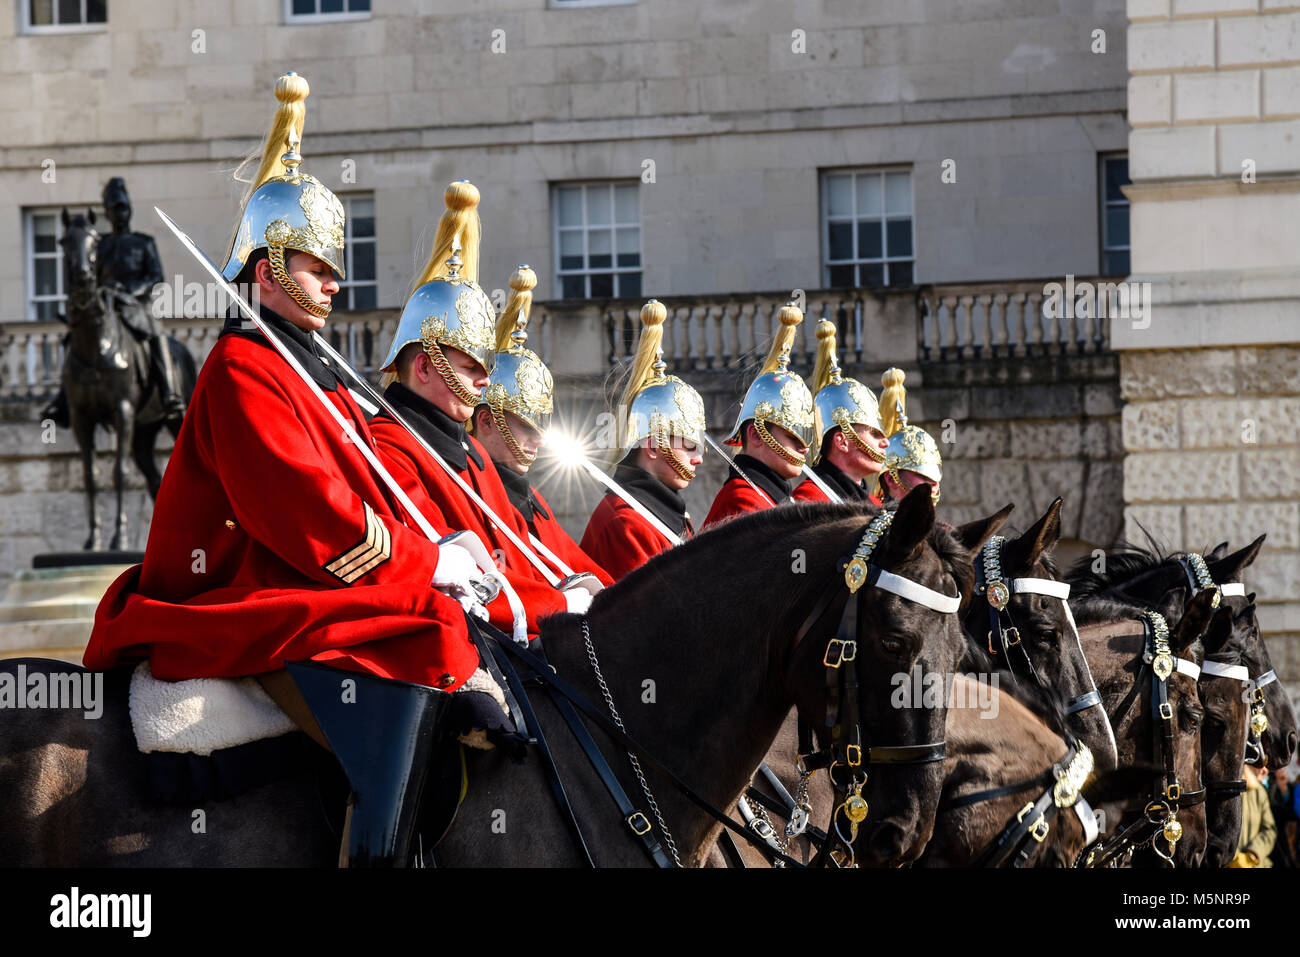 Relève de la garde, Horse Guards Parade, Londres. Gardes vie Household Cavalry soldats à cheval en robe d'hiver de cérémonie. Chevaux Banque D'Images